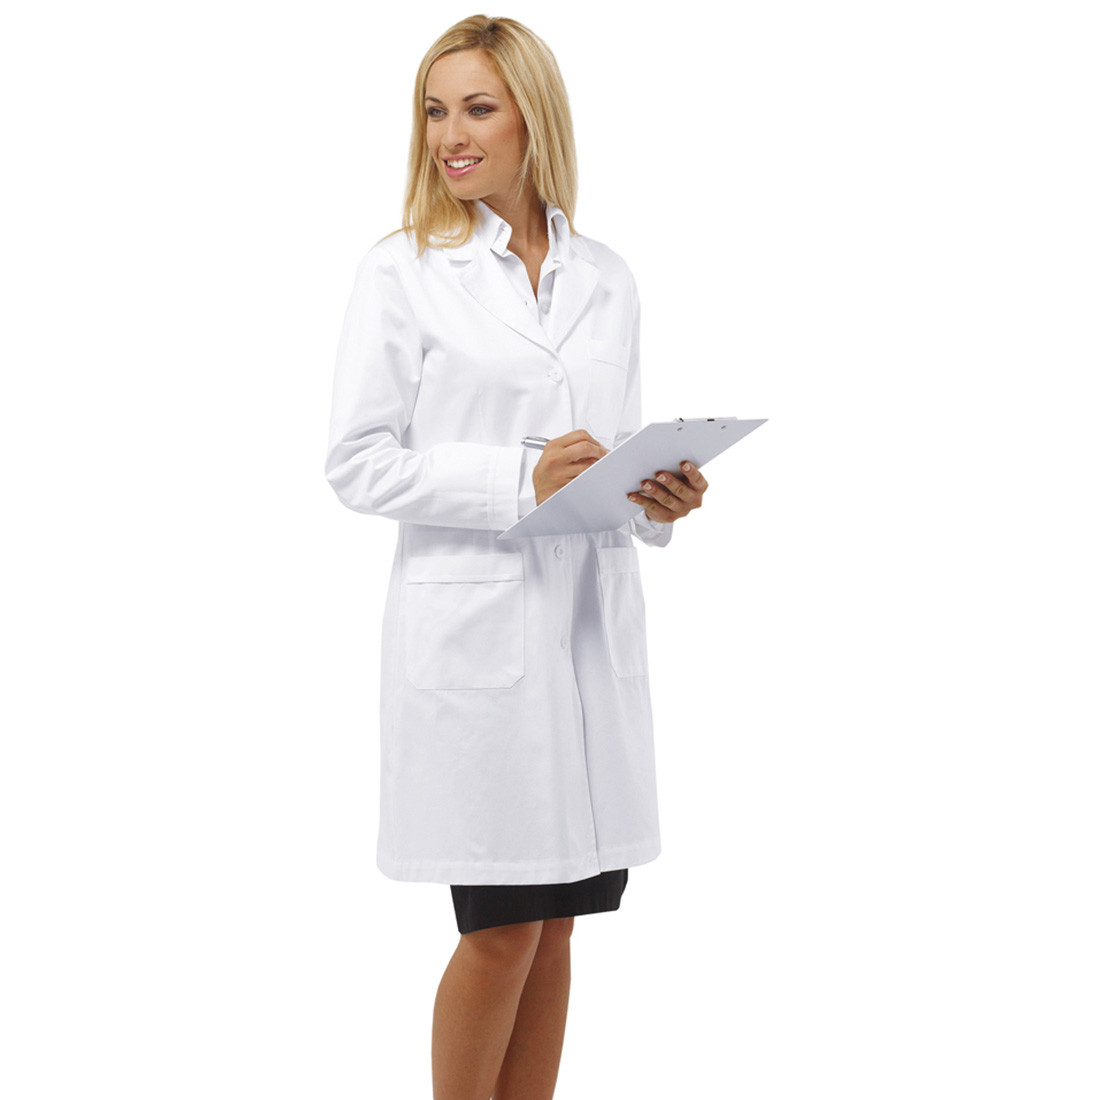 Camice medica da donna REYNARD - Abbigliamento di protezione